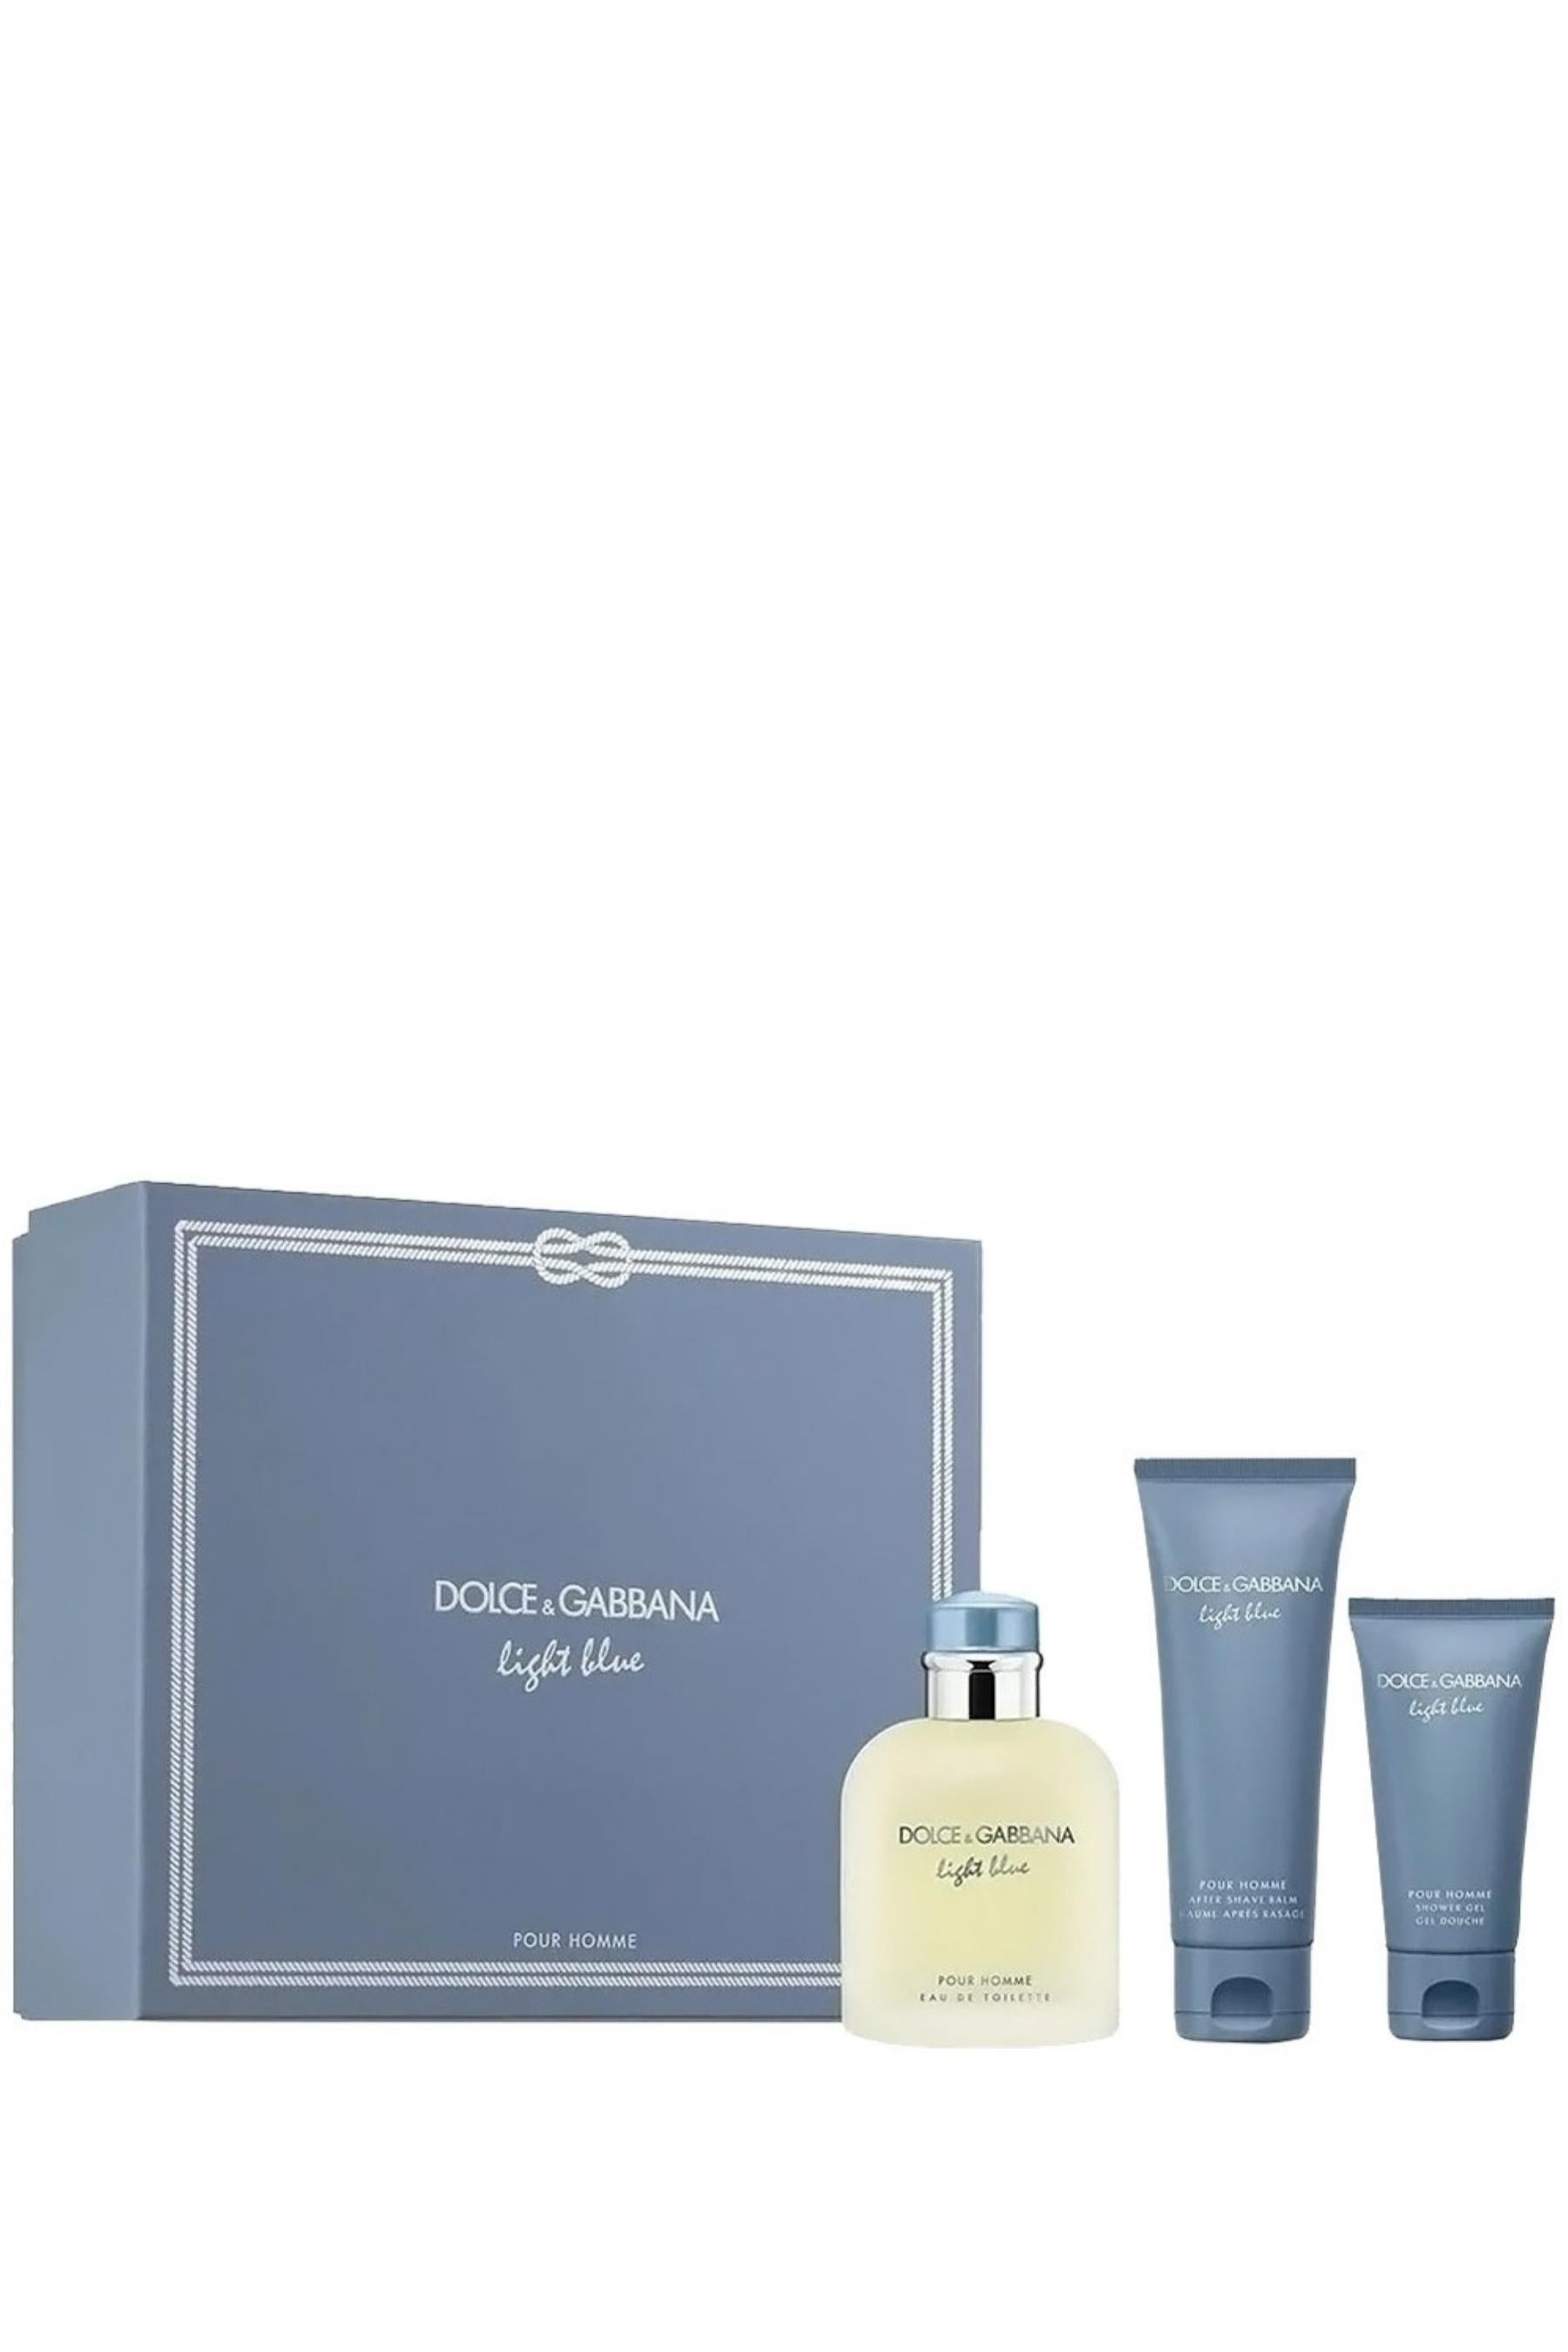 Dolce & Gabbana  Light Blue for Men Eau de Toilette 3 Pc Set - REBL